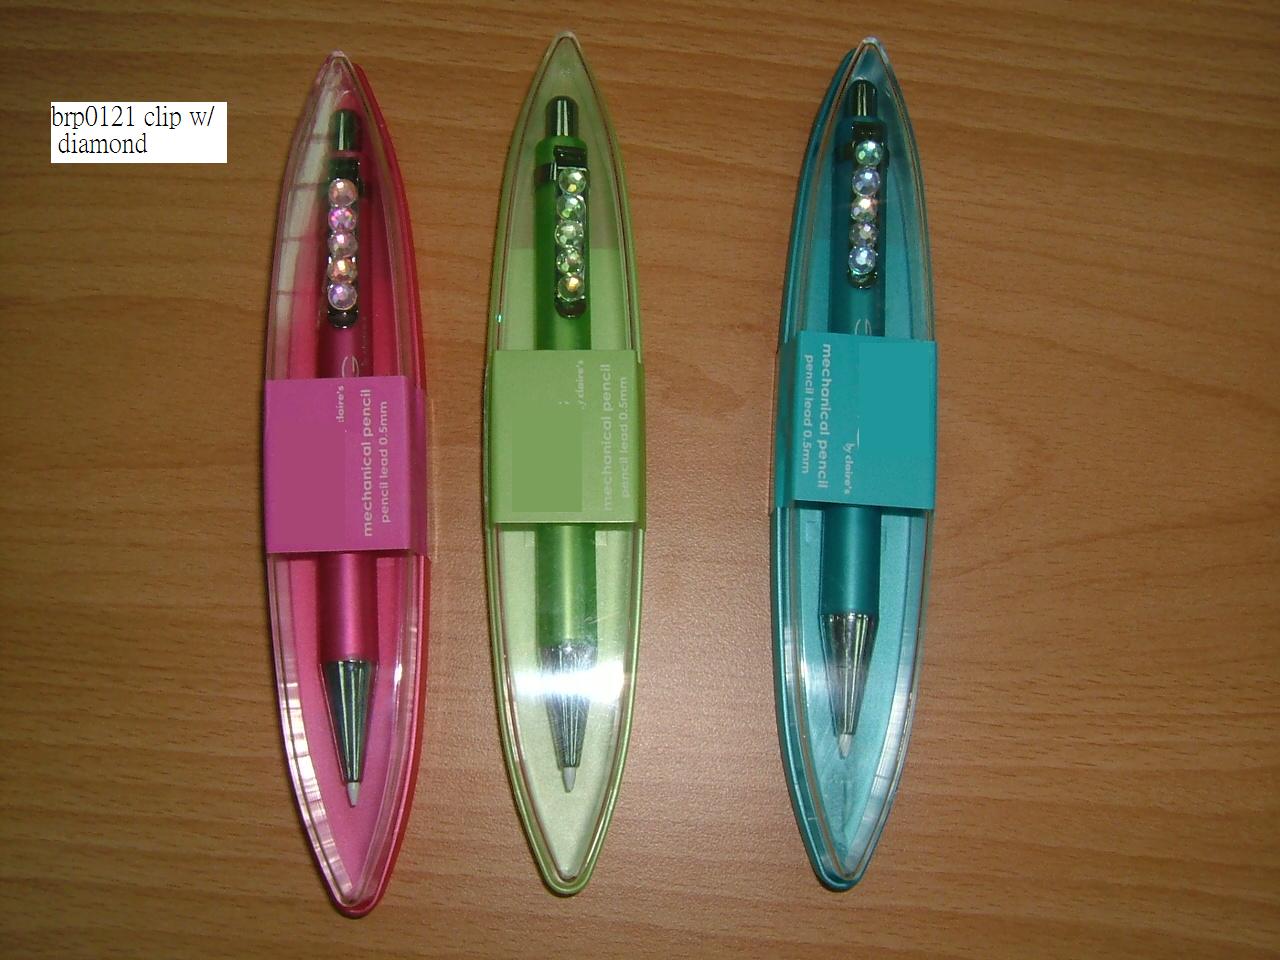 ball pen /gel pen /mechanical pencil (ball pen /gel pen /mechanical pencil)